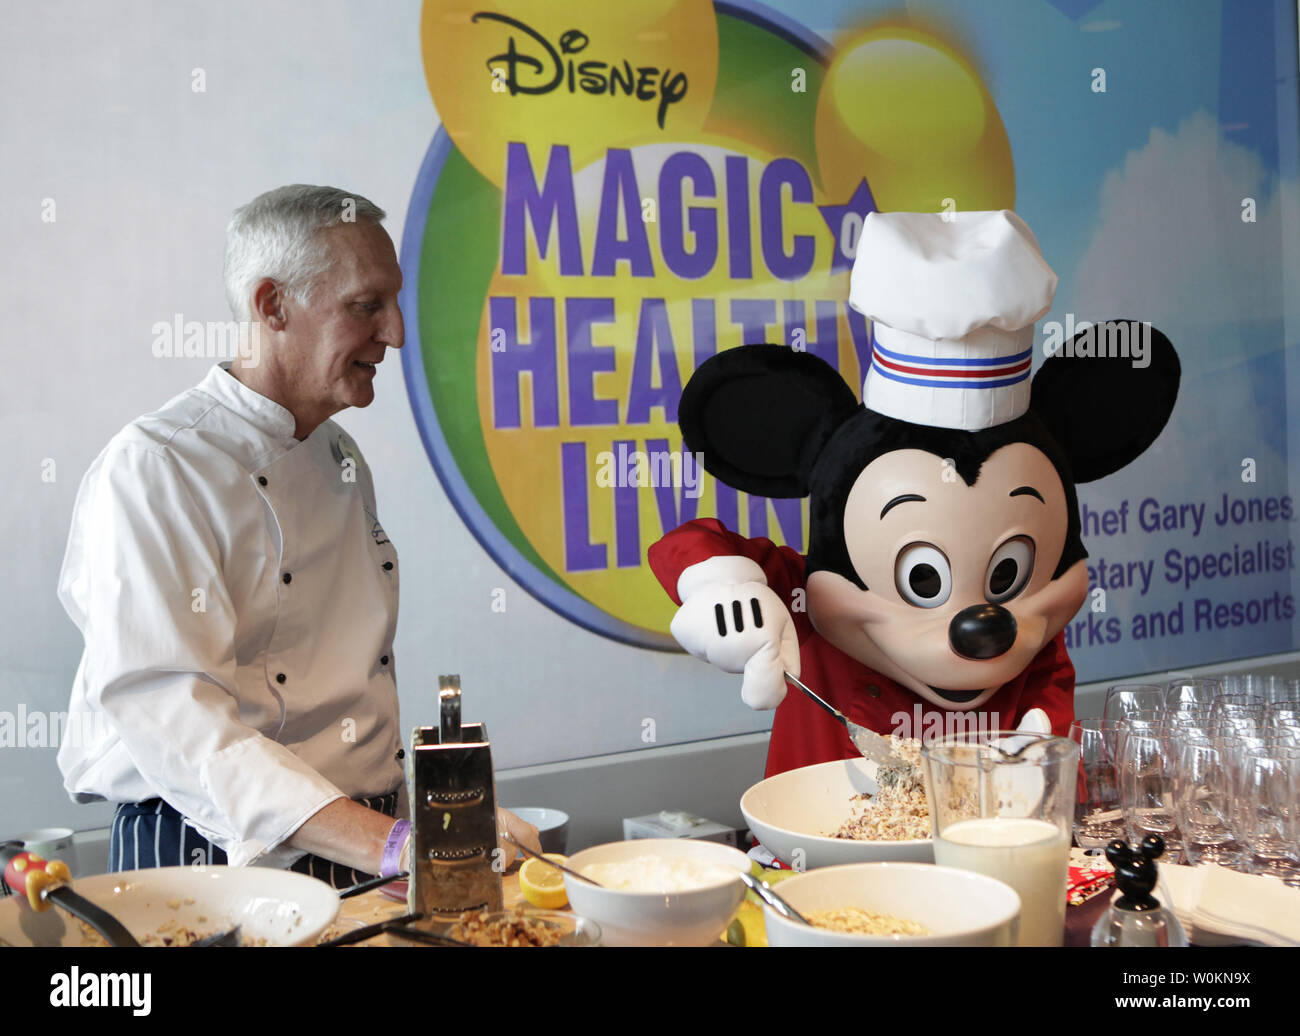 Le chef Gary Jones et le personnage de Walt Disney Mickey Mouse préparer une alimentation saine avant l'annonce de l'entreprise avancement important des lignes directrices sur la nutrition policy à Washington le 5 juin 2012. UPI/Yuri Gripas. Banque D'Images